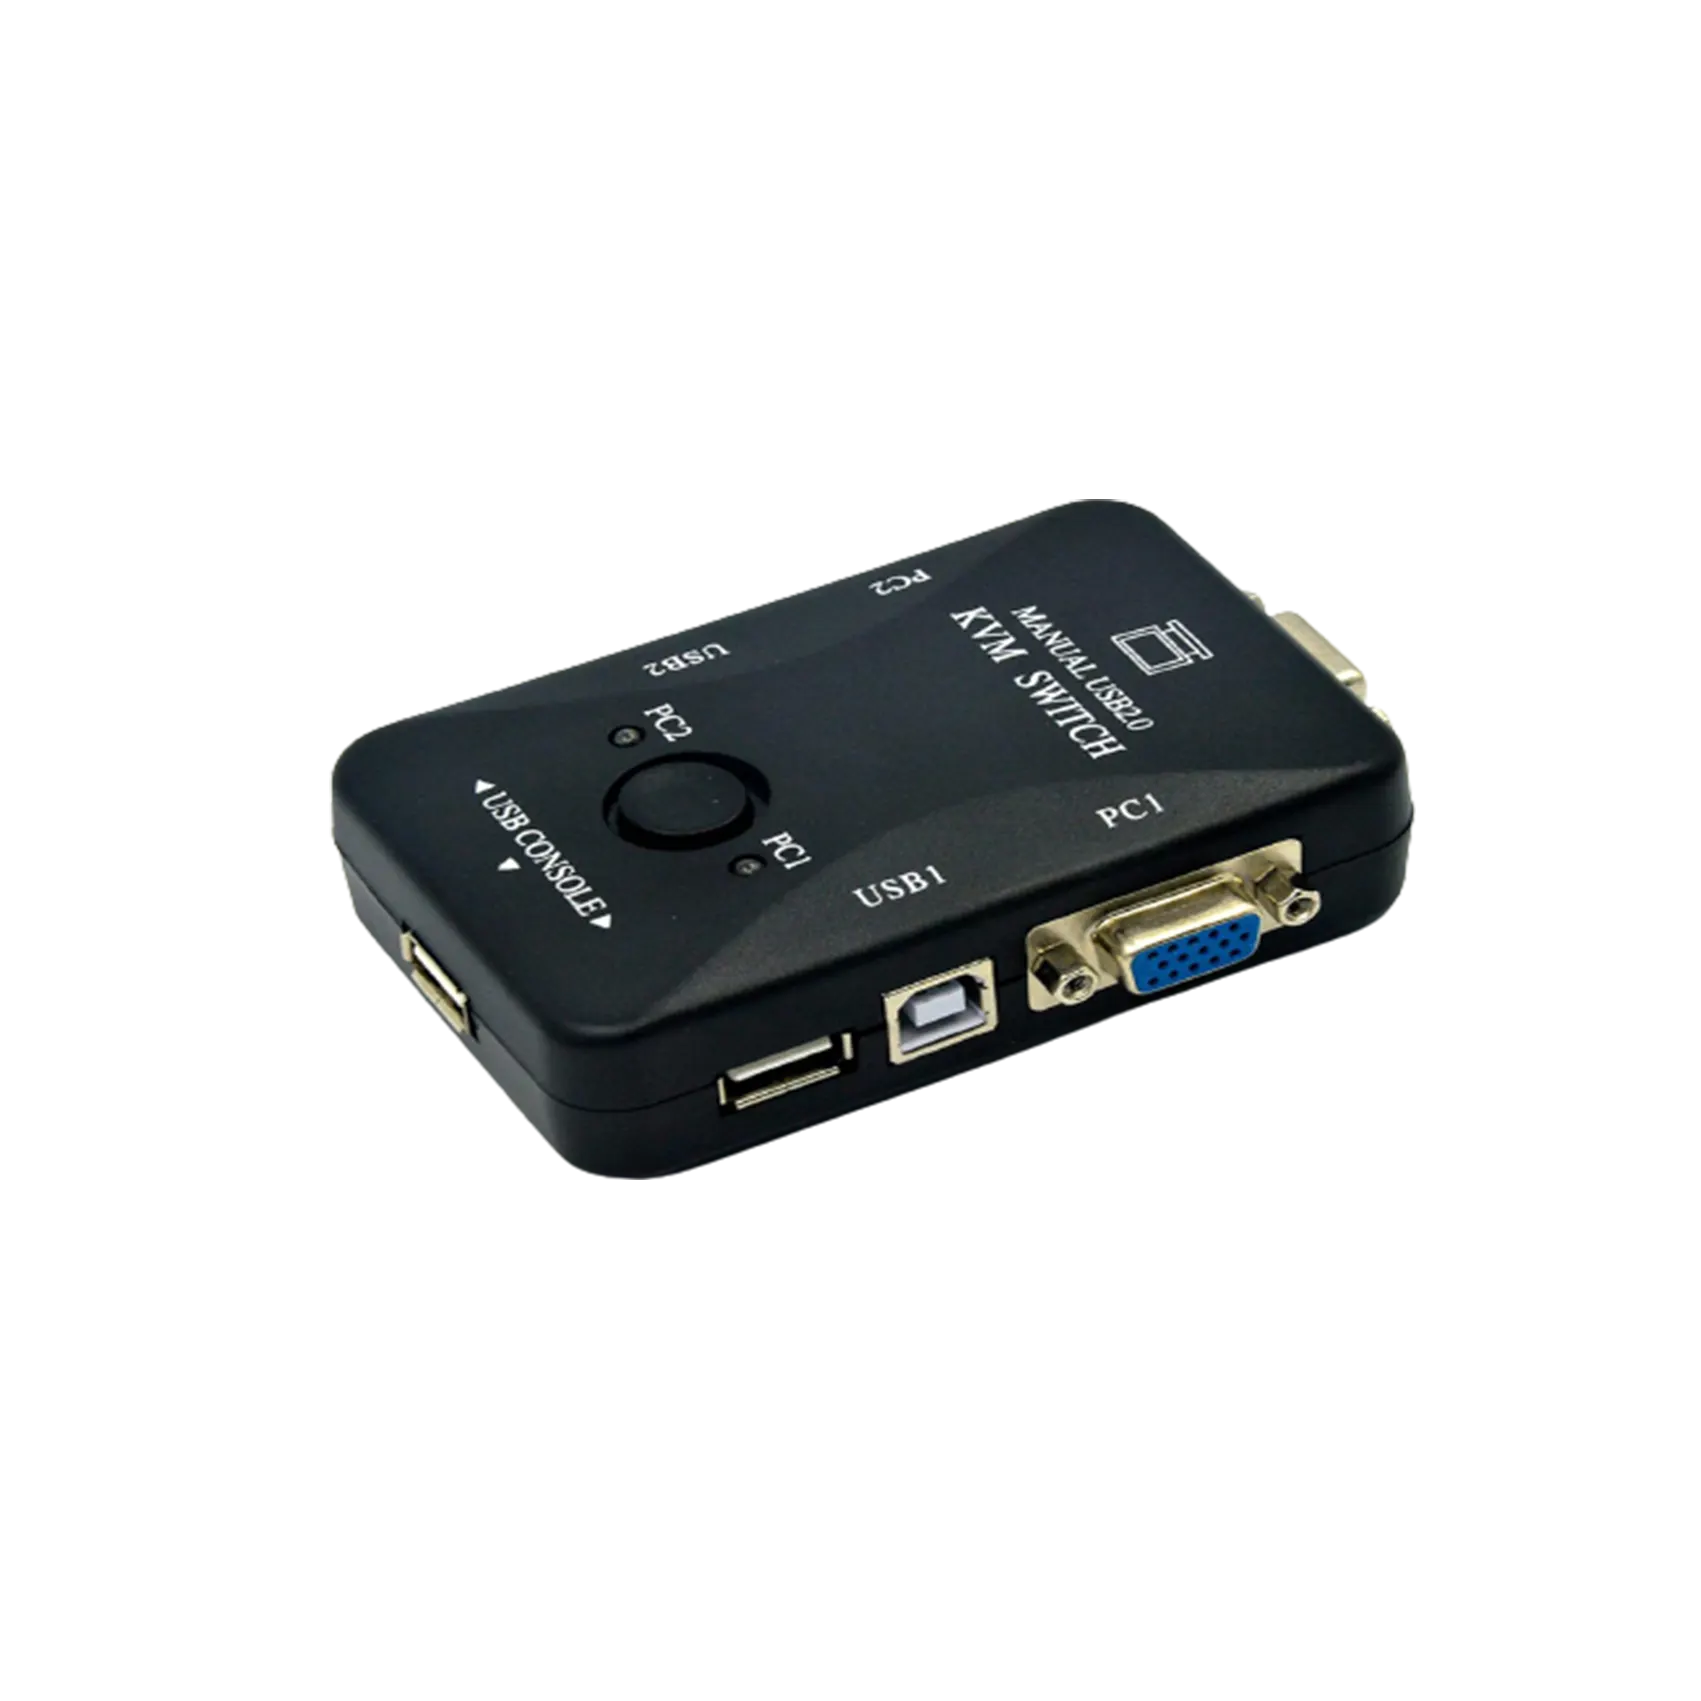 کی وی ام یو اس بی با قابلیت نصب 2 دستگاه به یک مانیتوربه همراه 3 پورت یو اس بی و یک پی اس 2